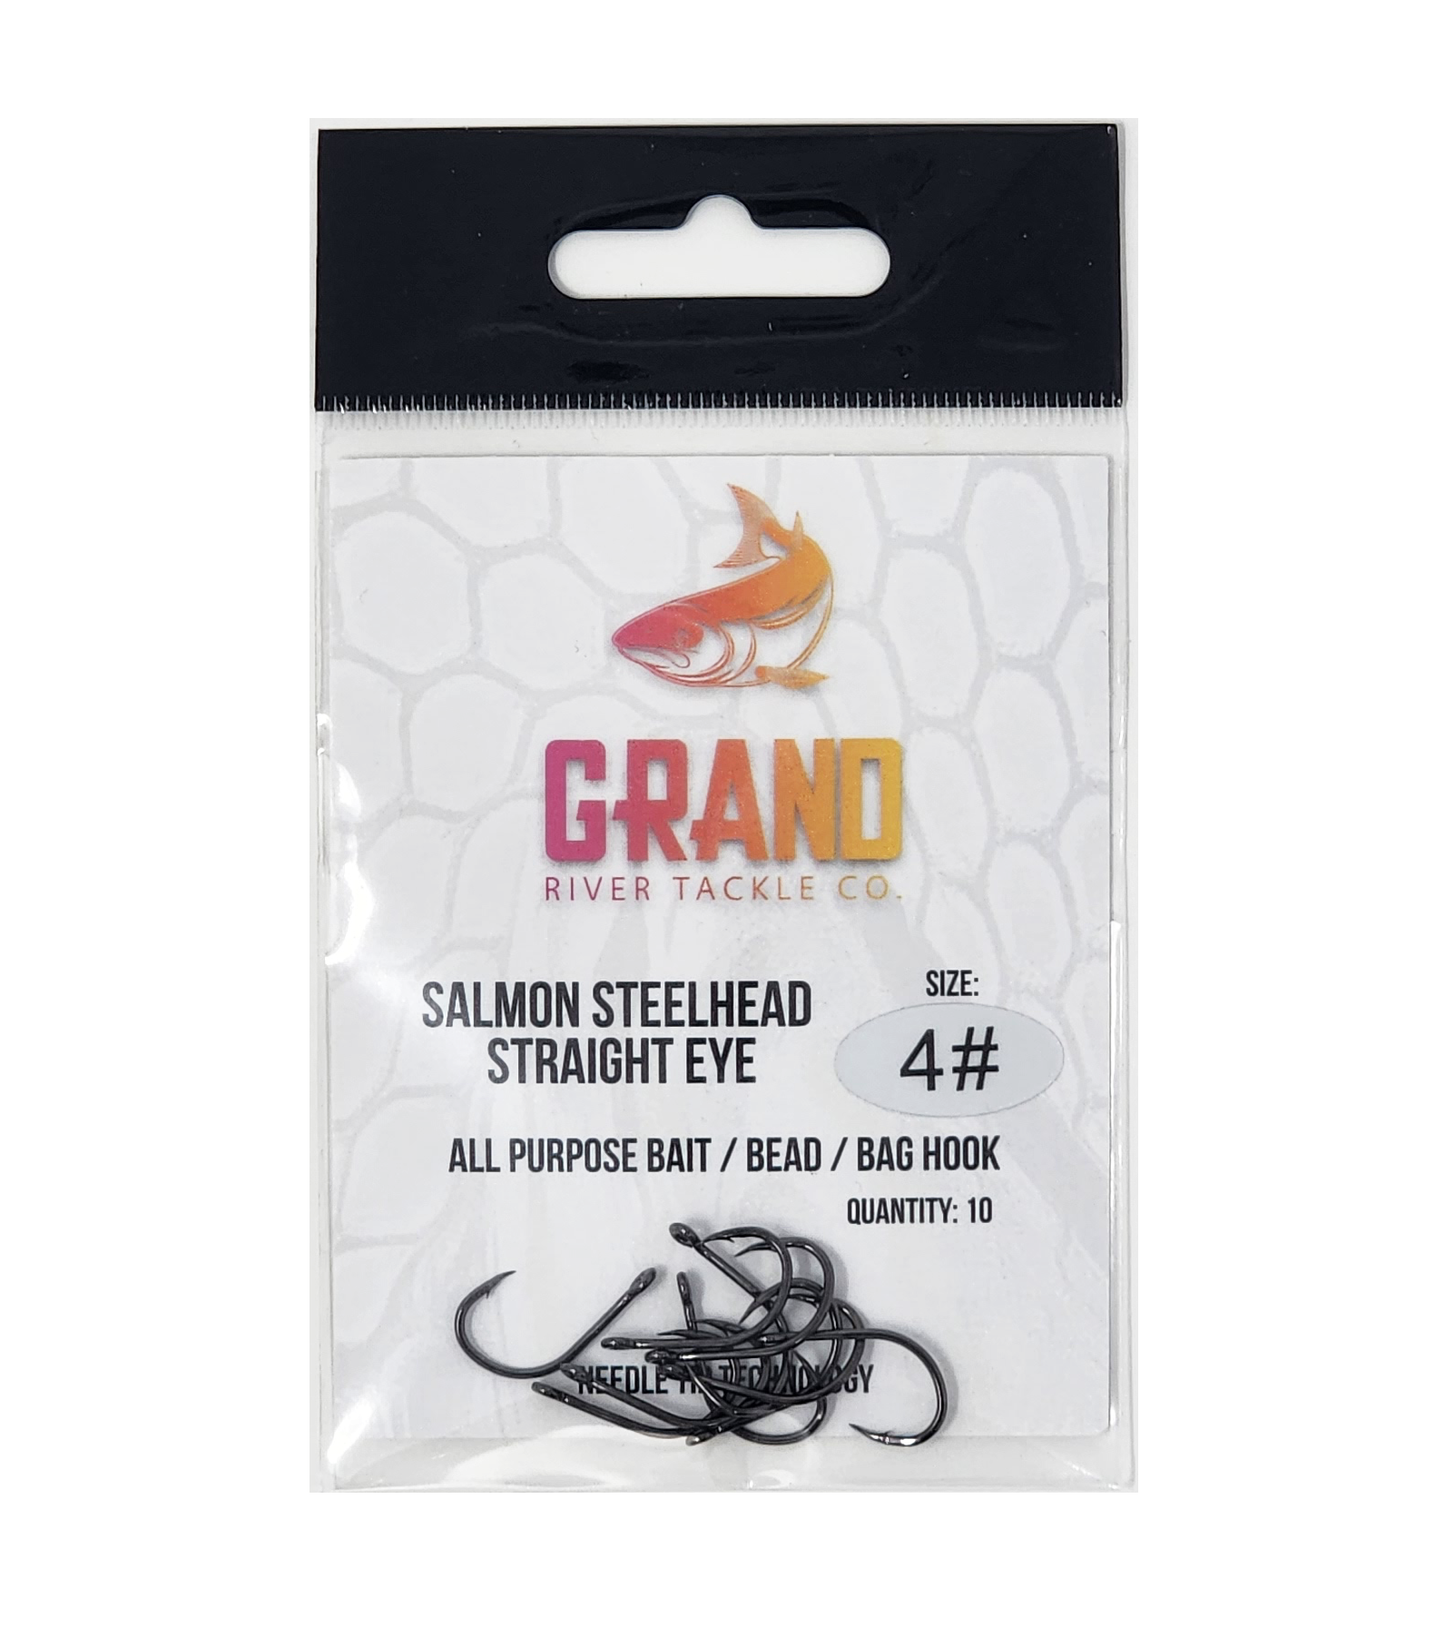 Salmon Steelhead All Purpose Bait / Bead / Bag Hook Straight Eye